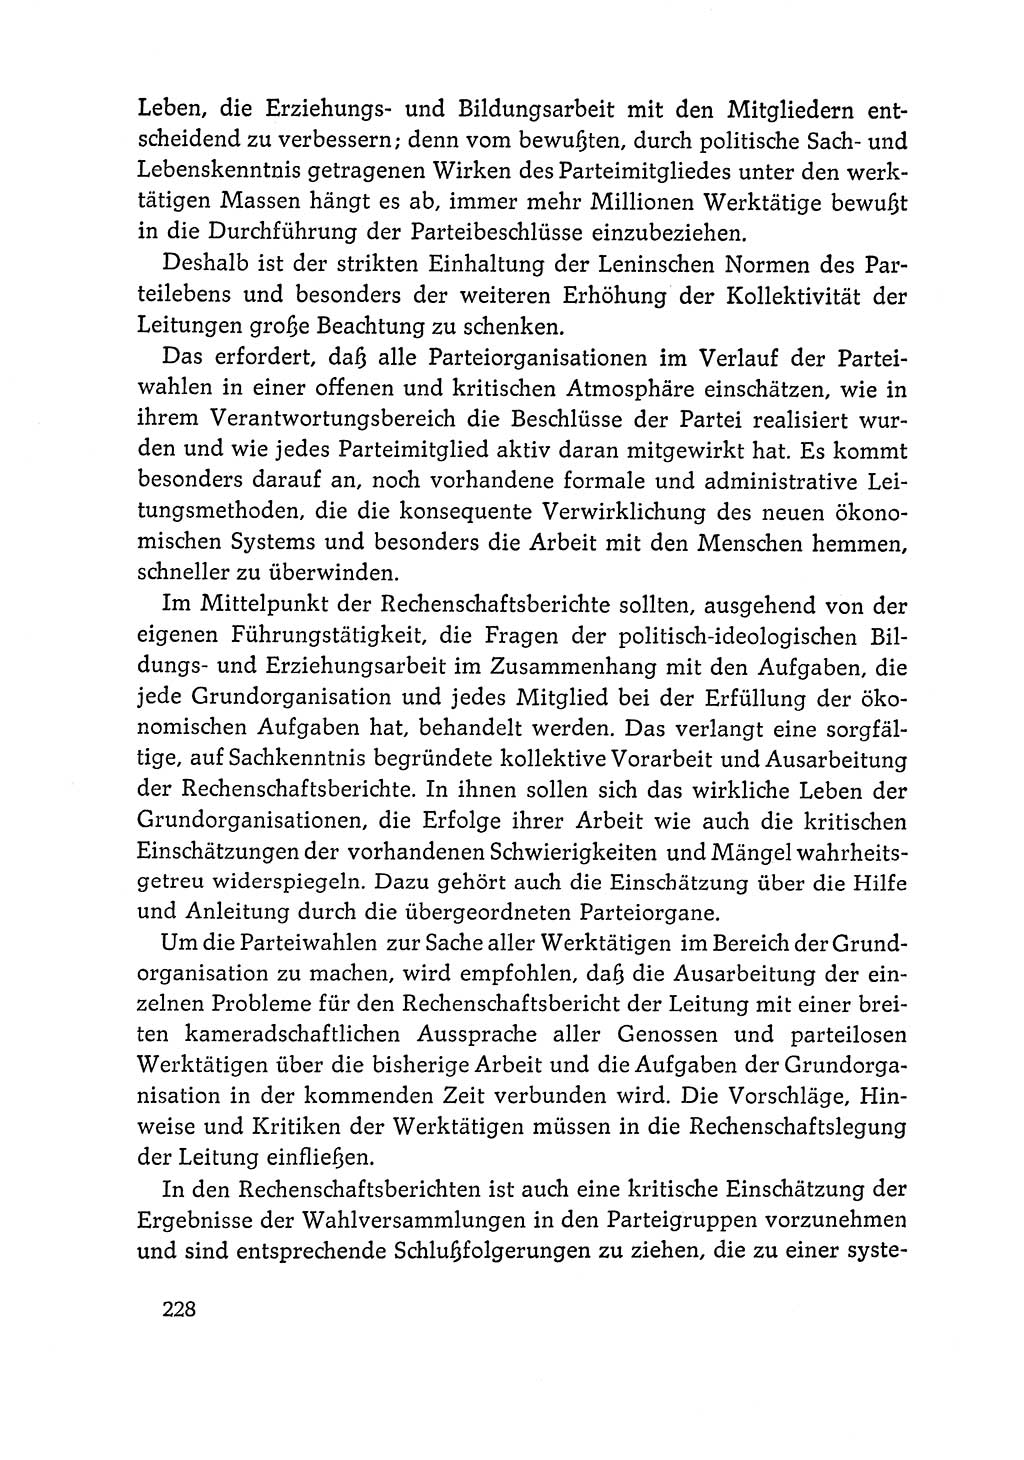 Dokumente der Sozialistischen Einheitspartei Deutschlands (SED) [Deutsche Demokratische Republik (DDR)] 1964-1965, Seite 228 (Dok. SED DDR 1964-1965, S. 228)